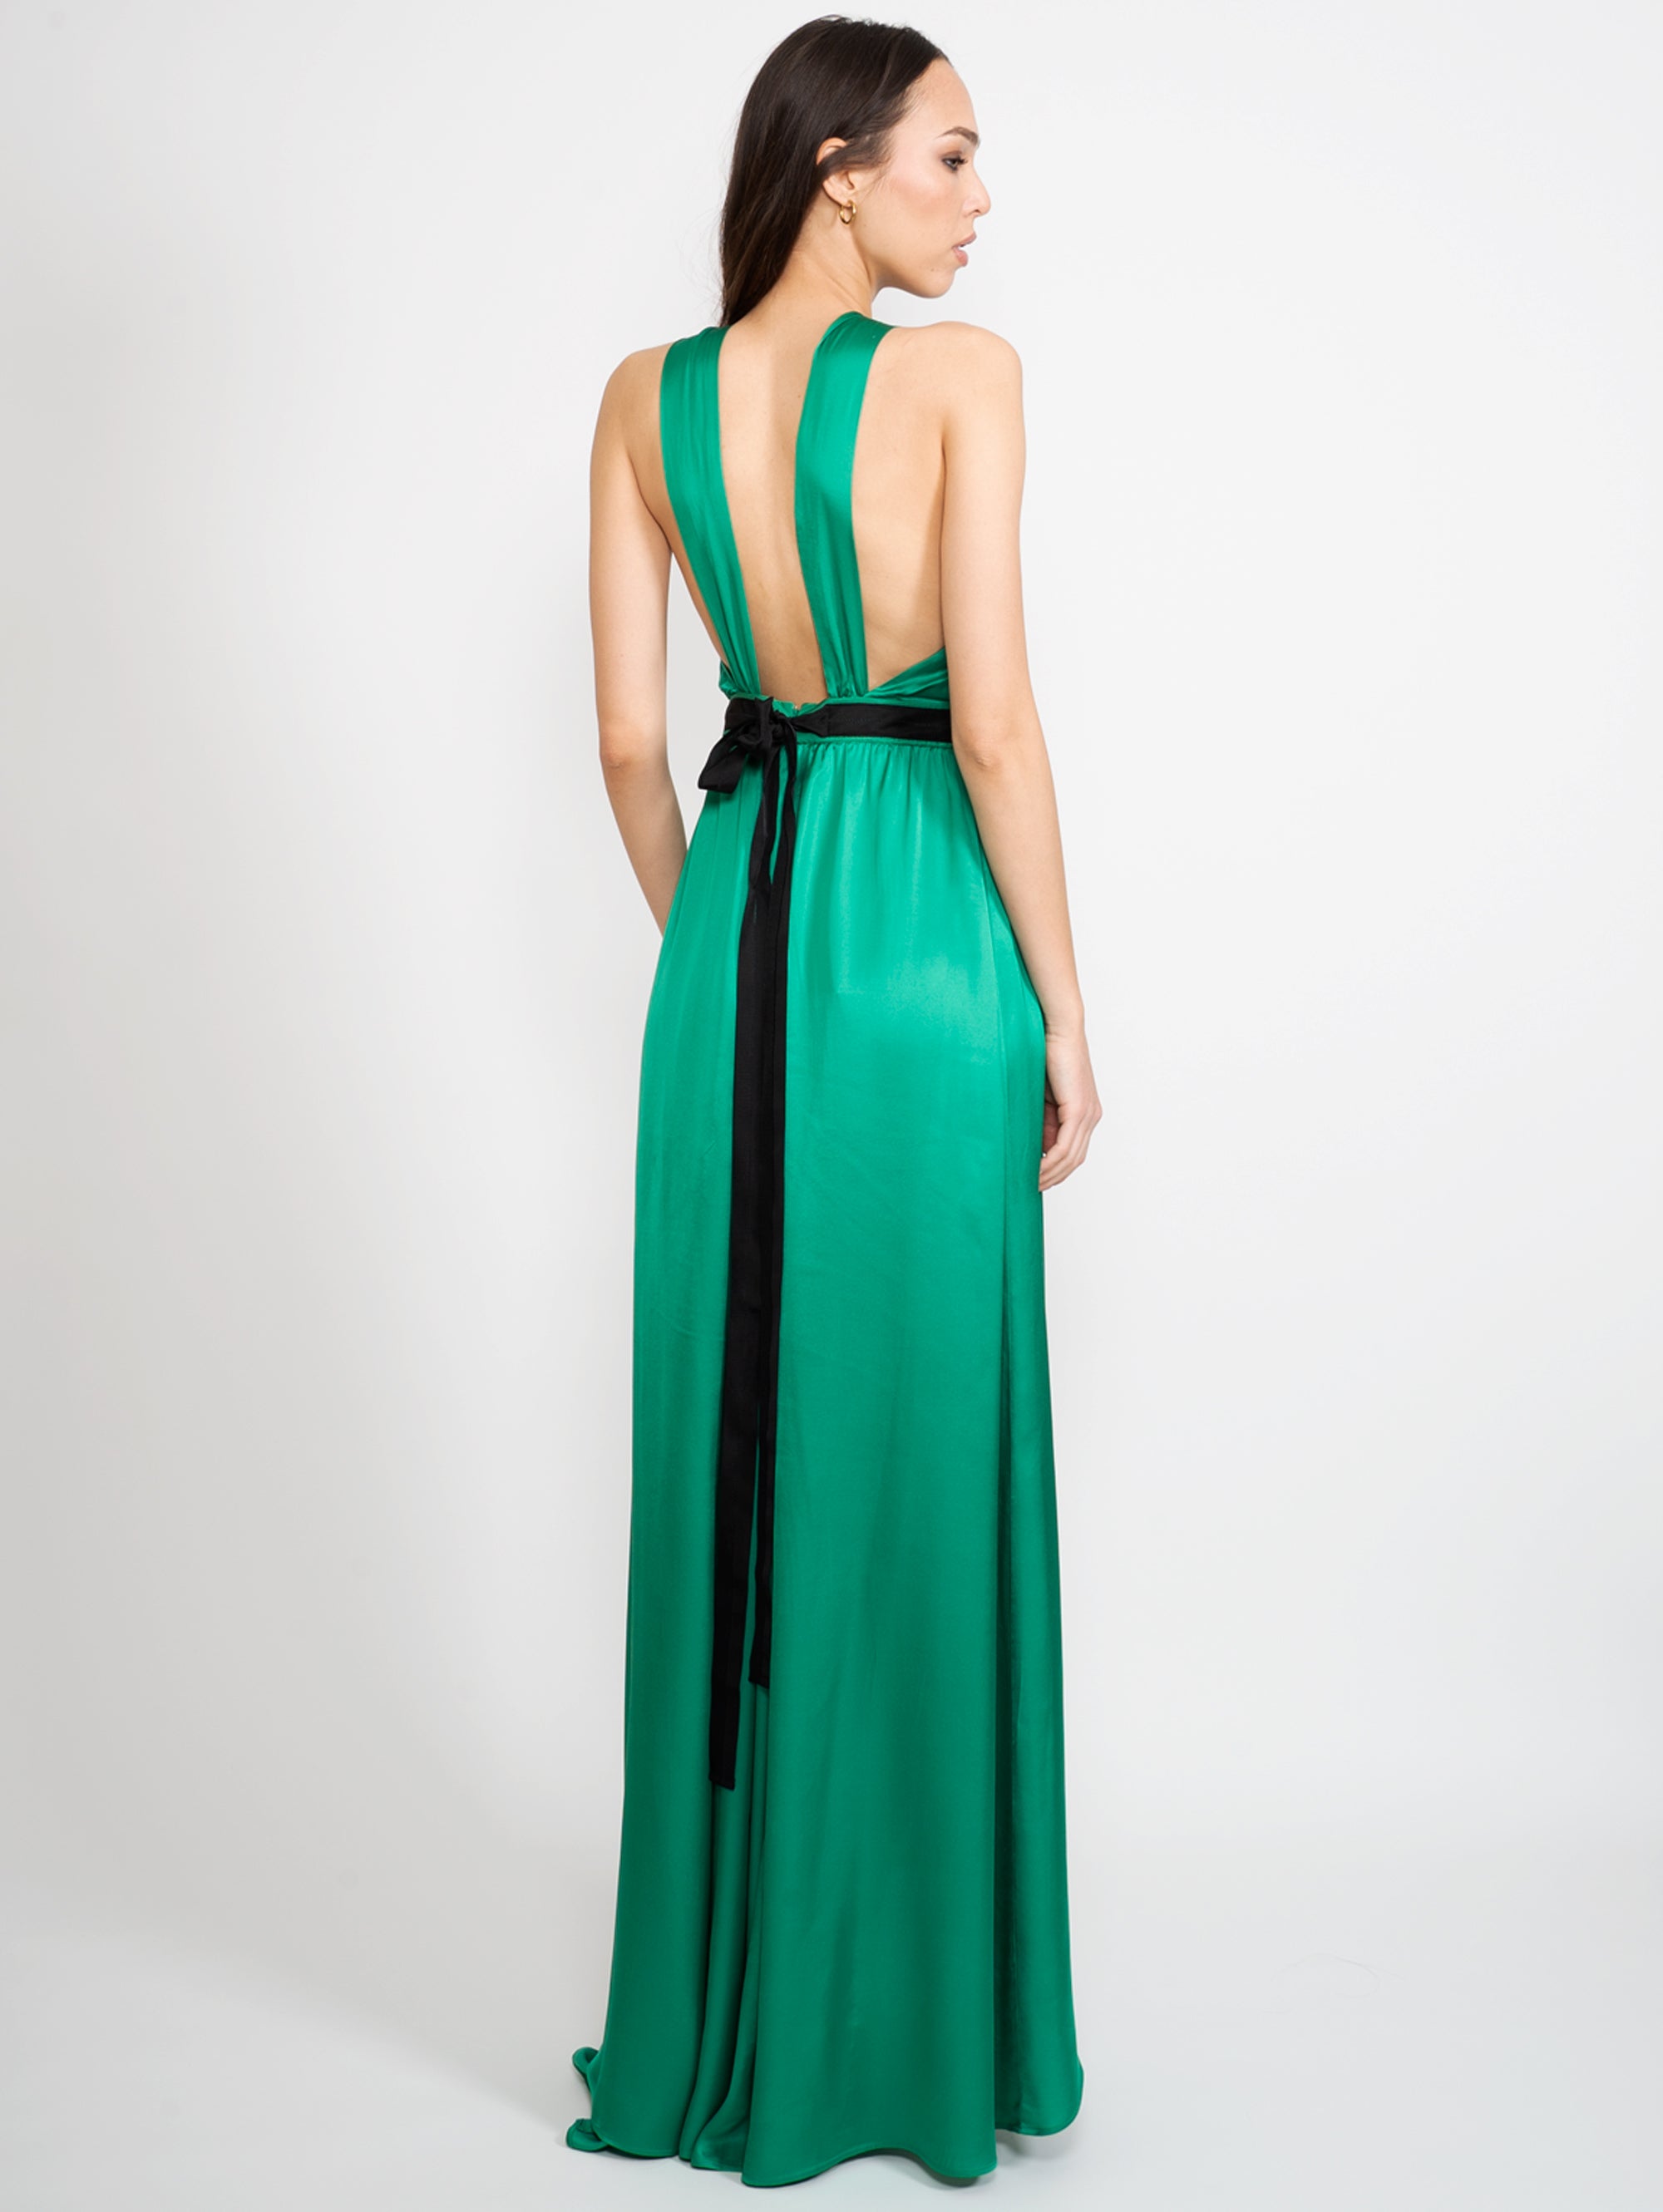 Green One Shoulder Satin Dress